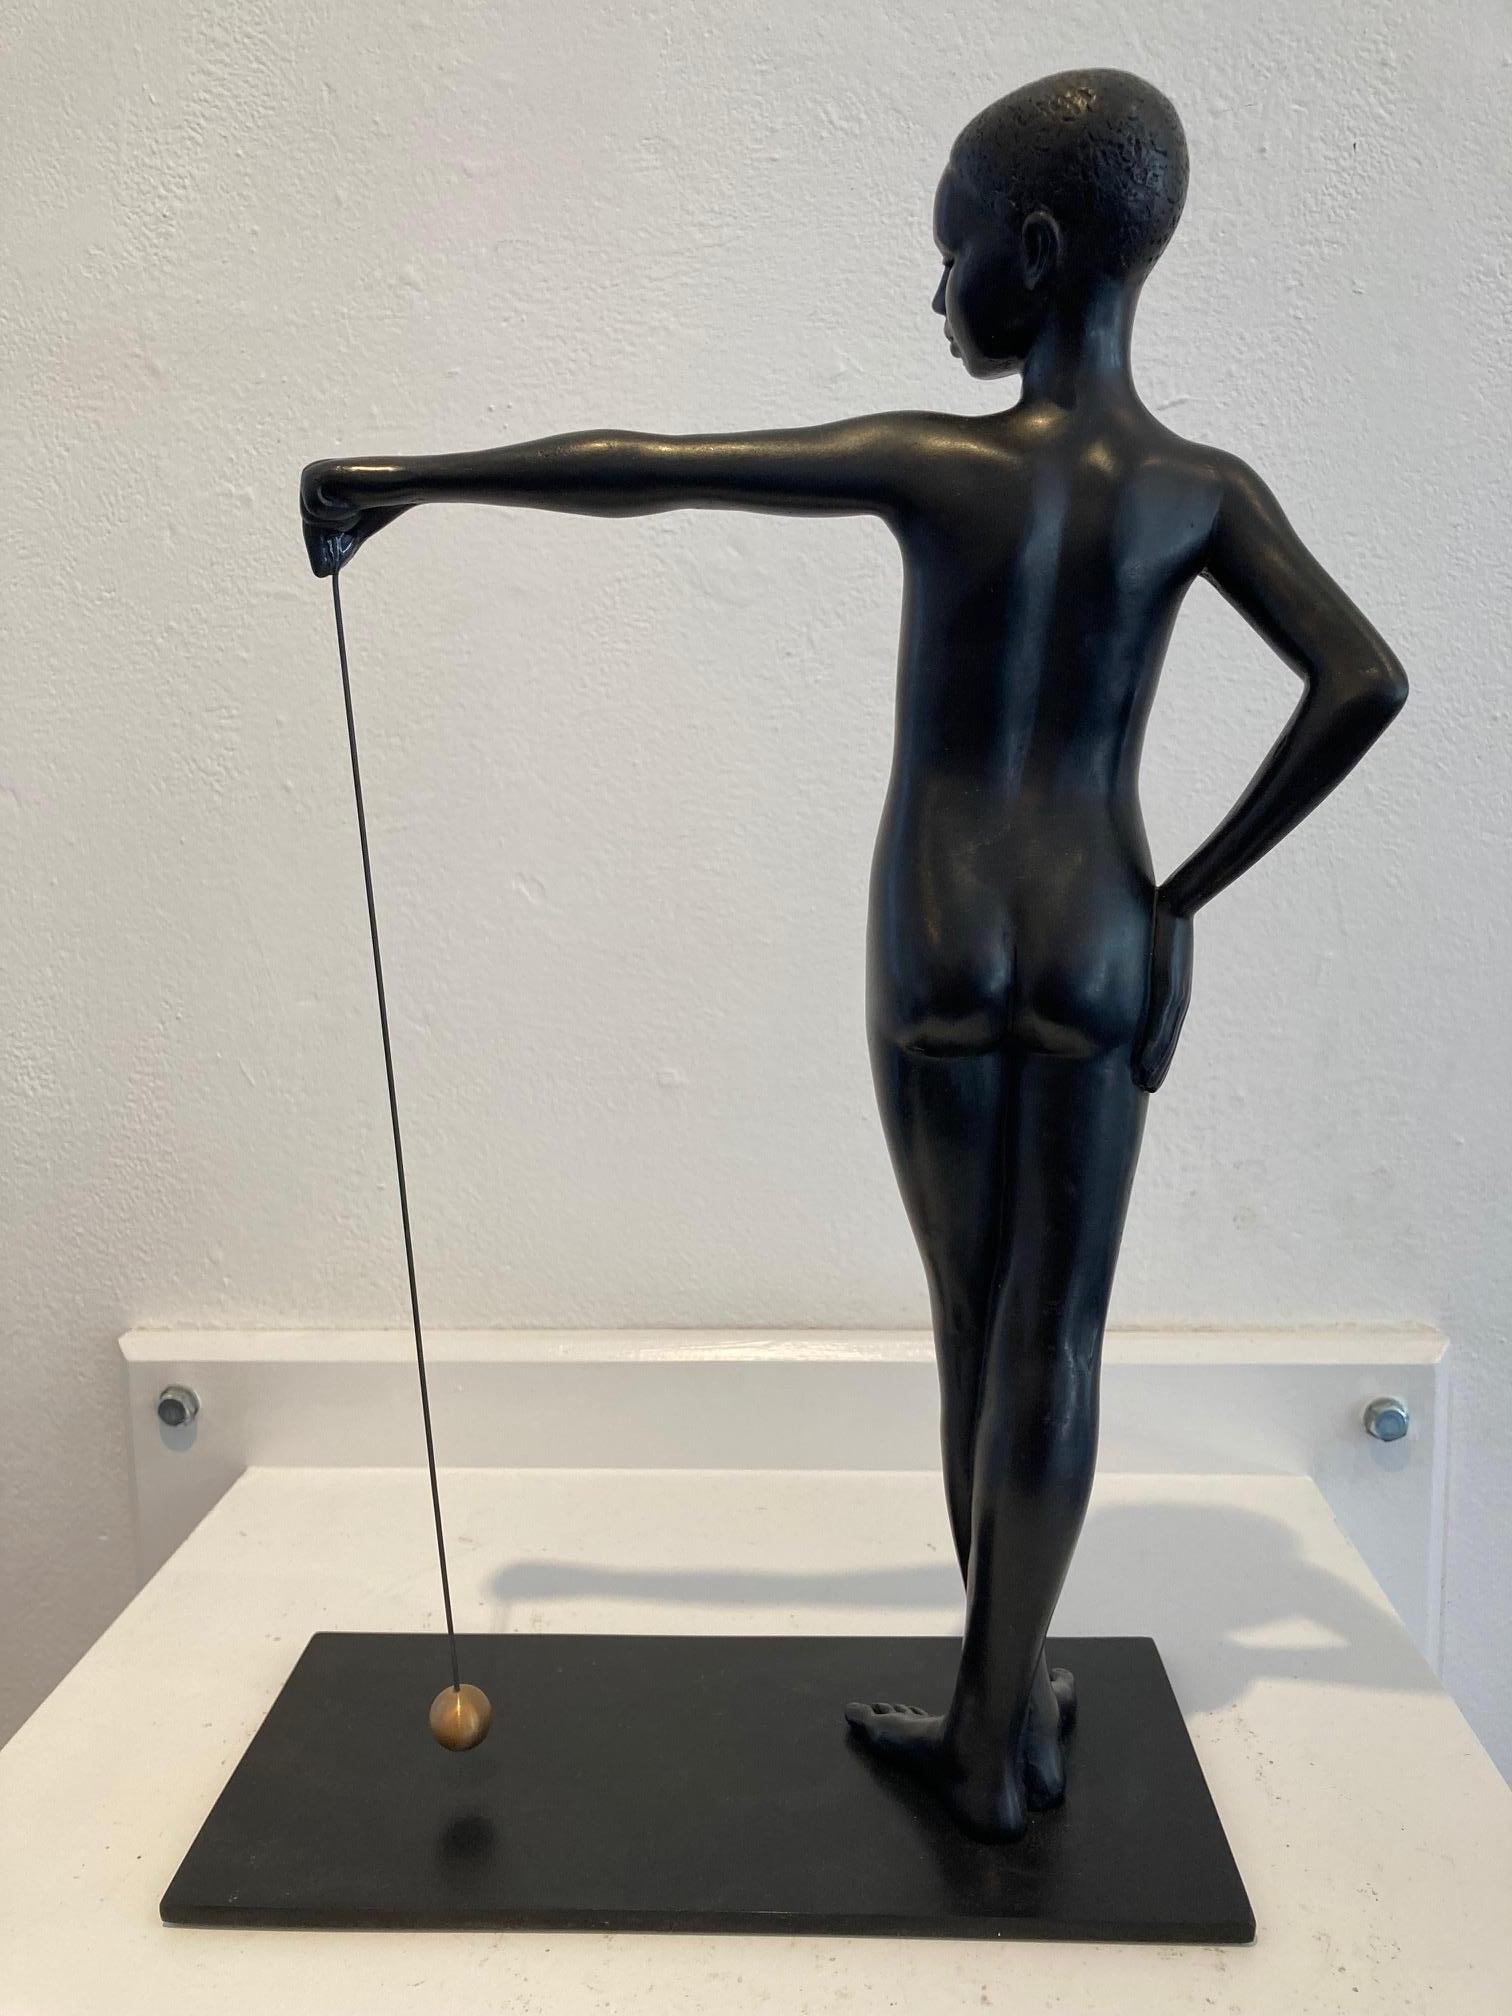 Sekundenförmige schwarze Bronzeskulptur Lady Balance von Loodrecht  – Sculpture von Erwin Meijer